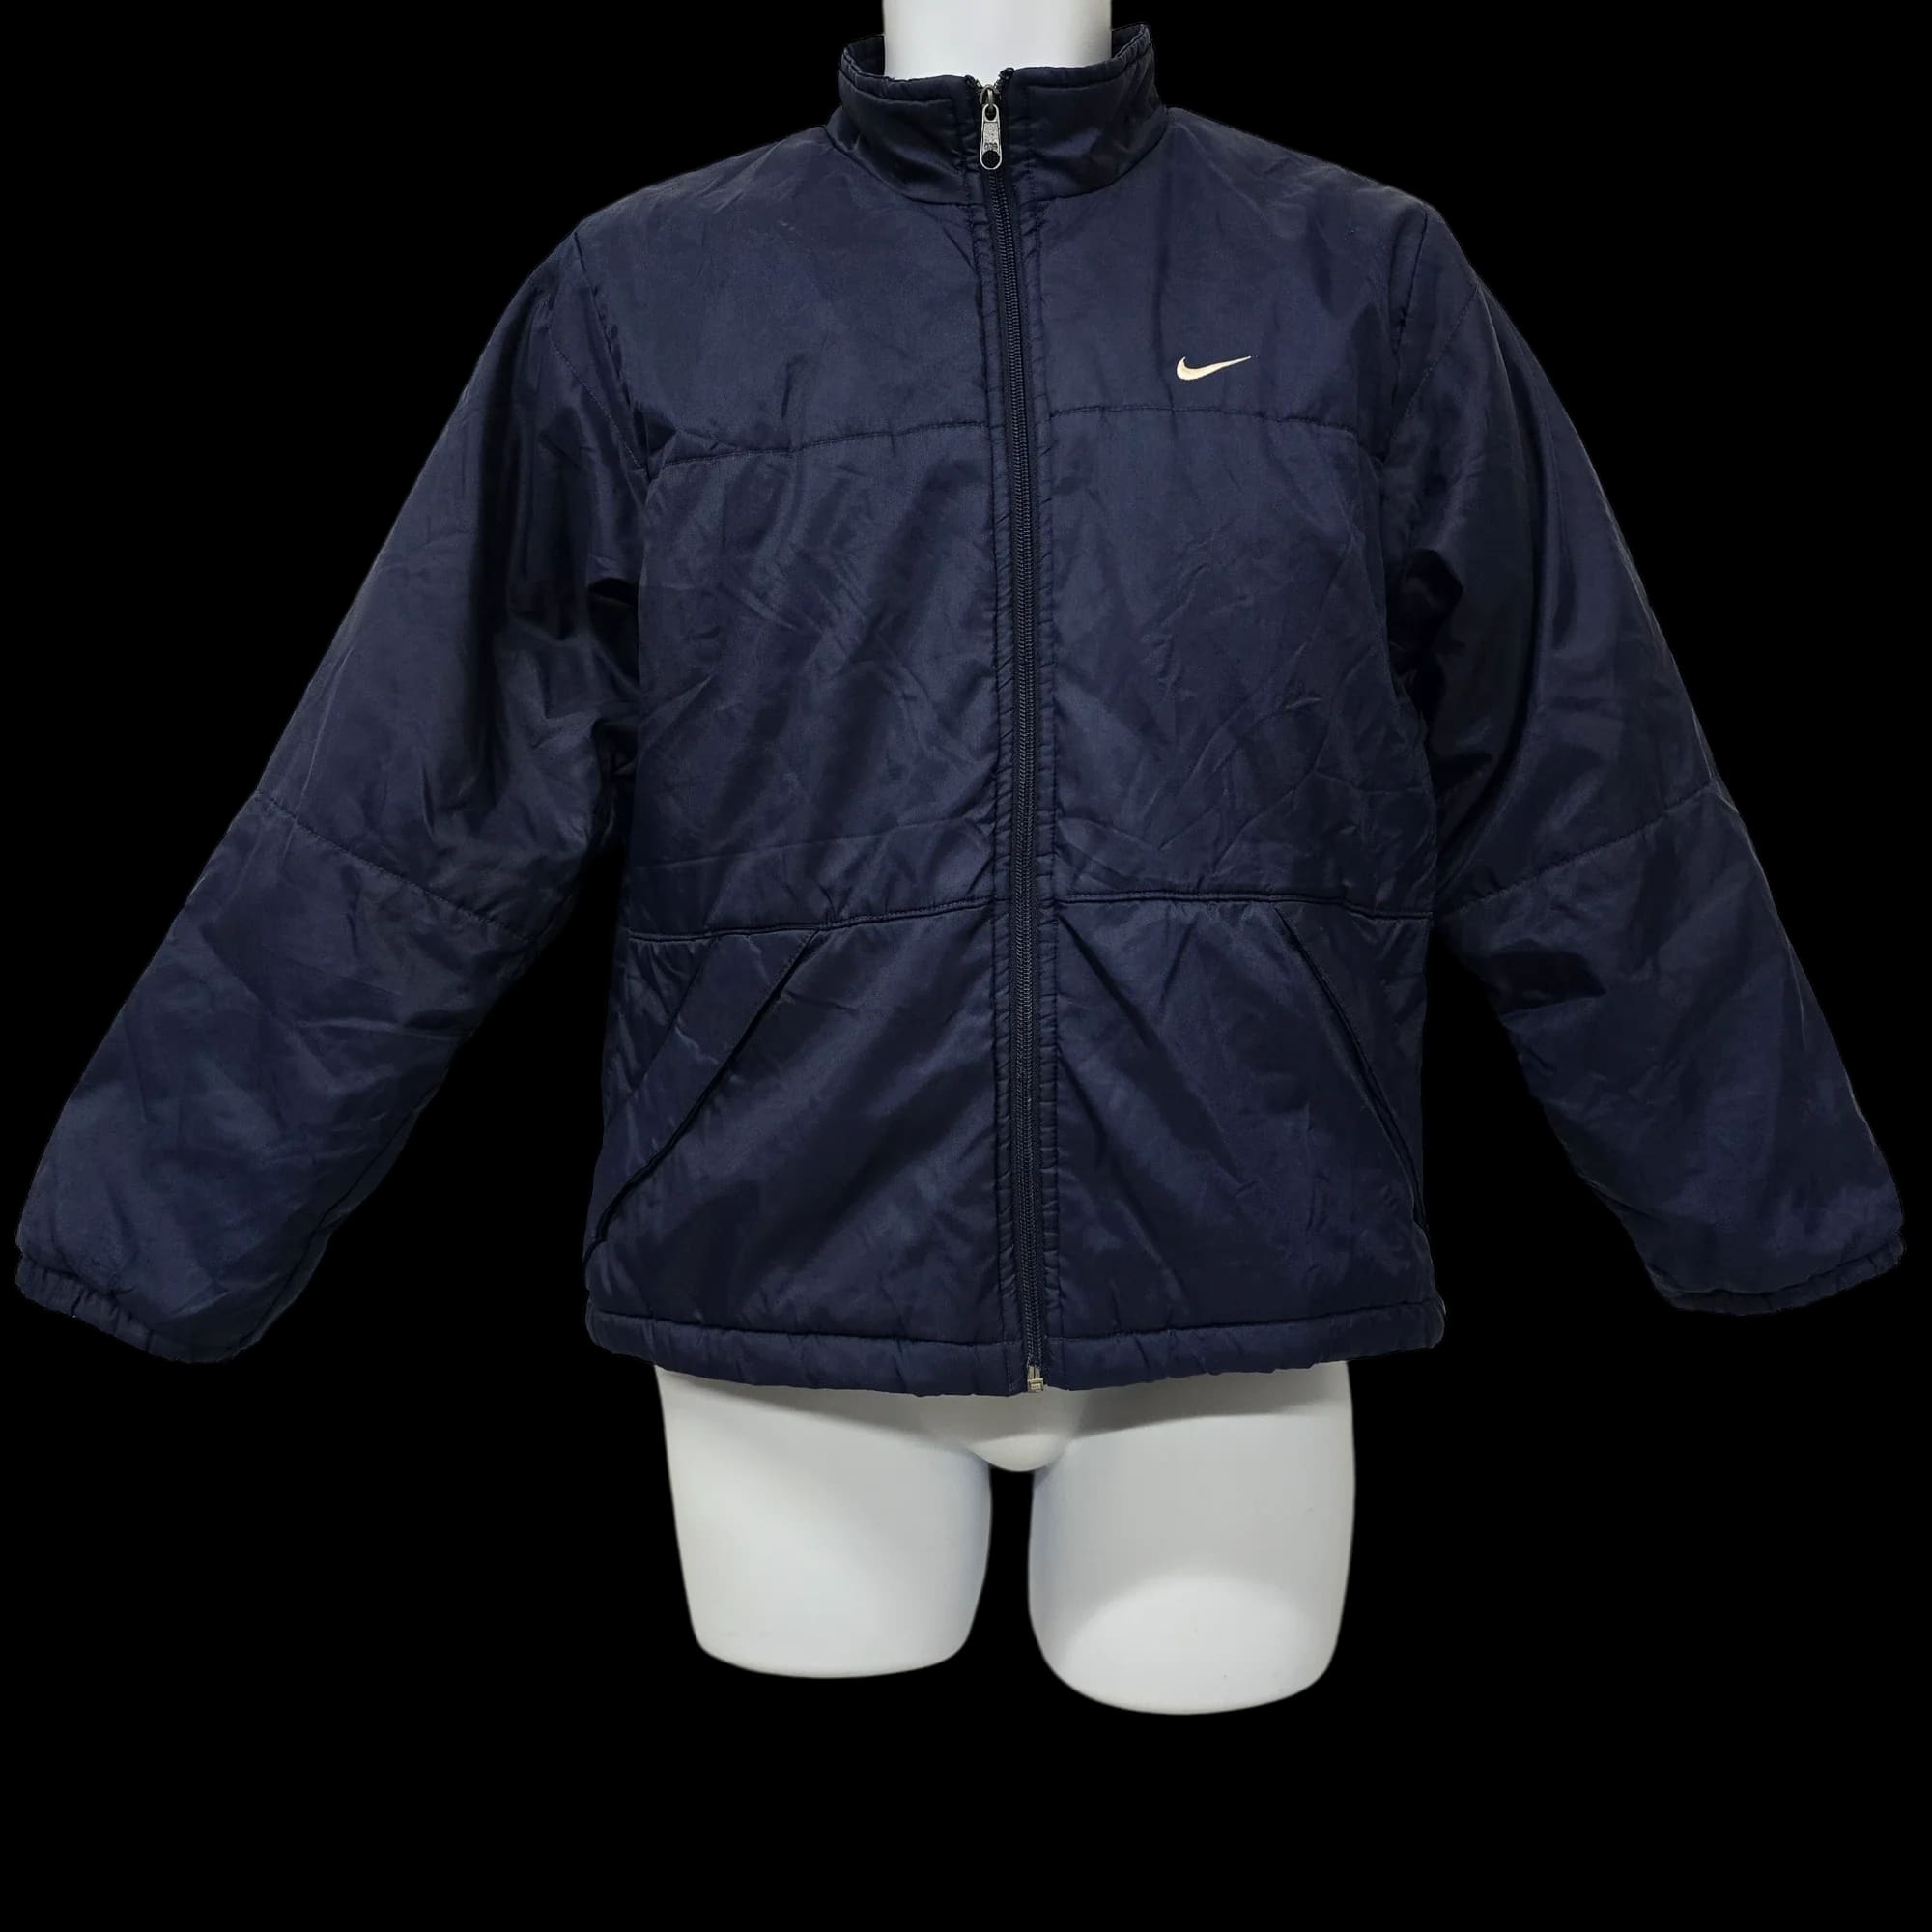 Unisex Nike Blue Bomber Jacket Coat UK Large - 3 - 3465